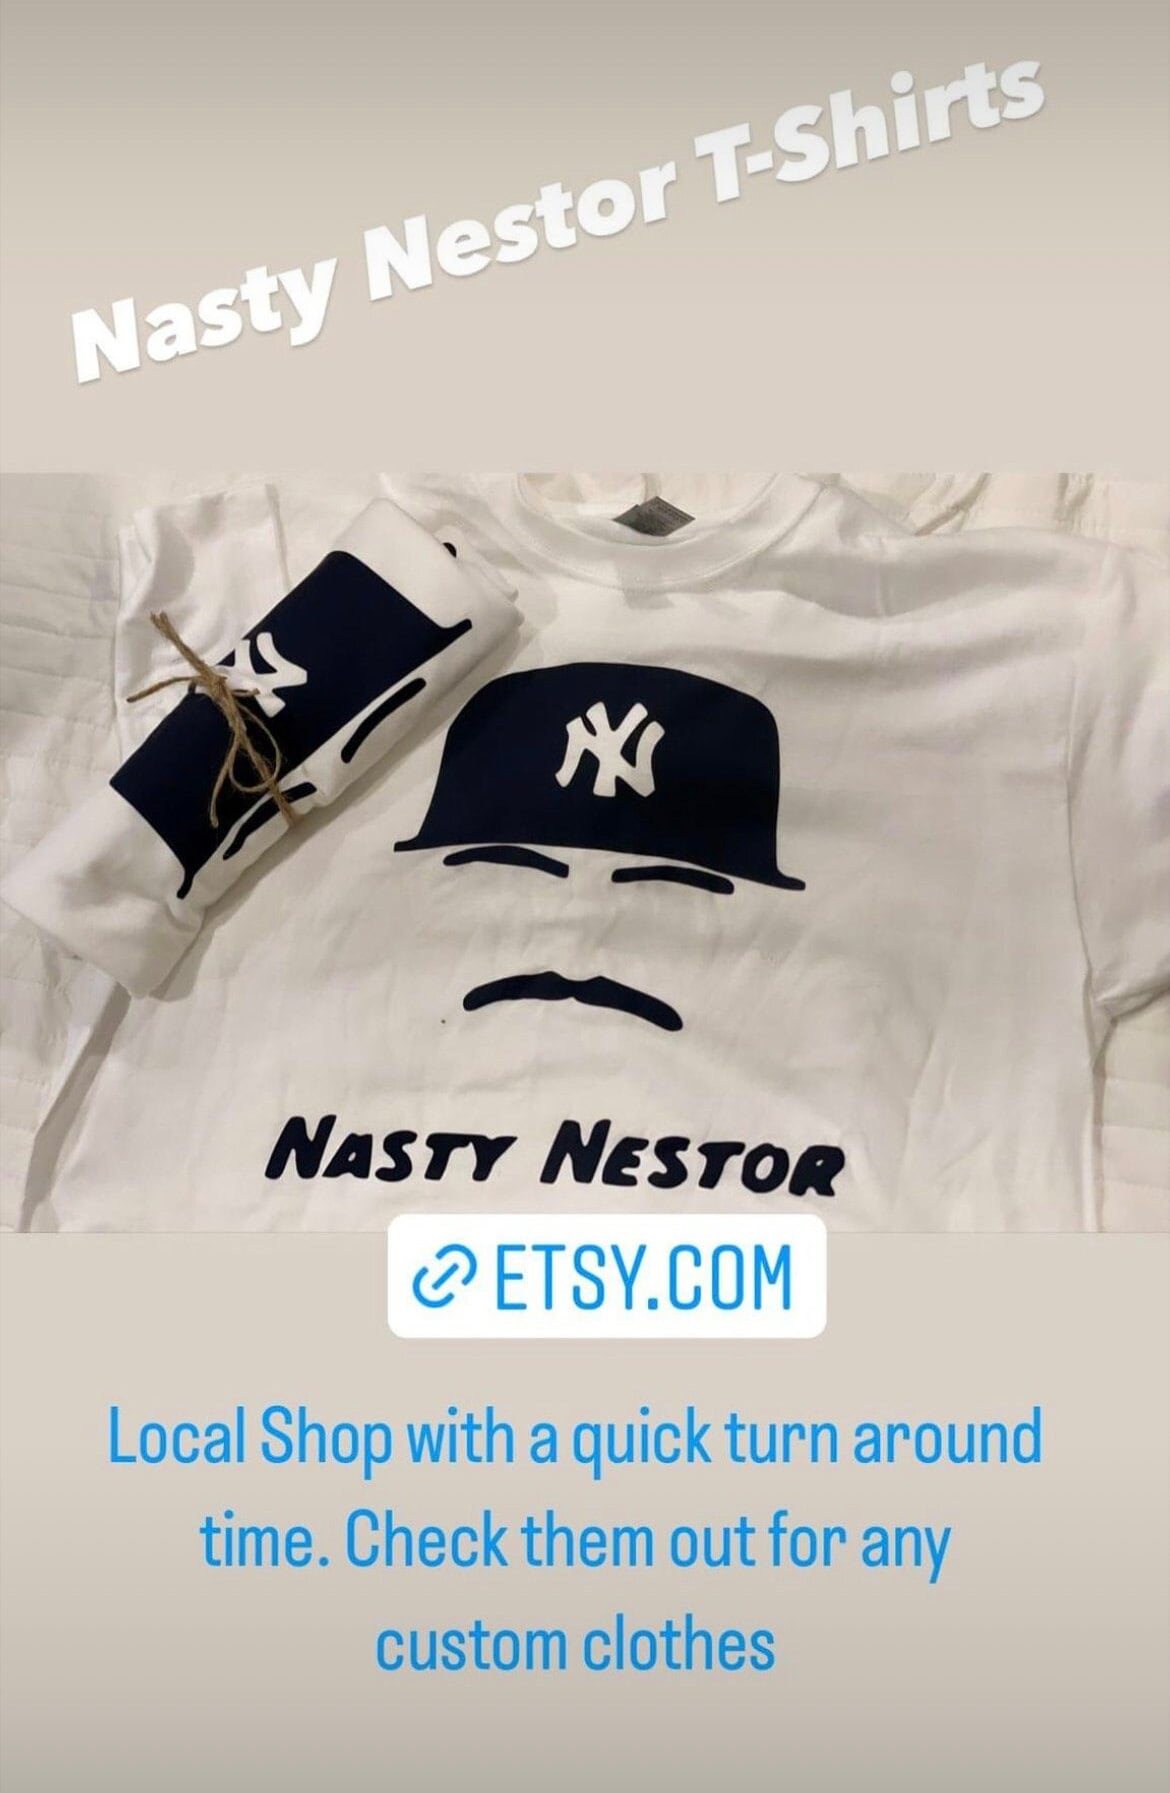 Nasty Nestor shirt Yankees